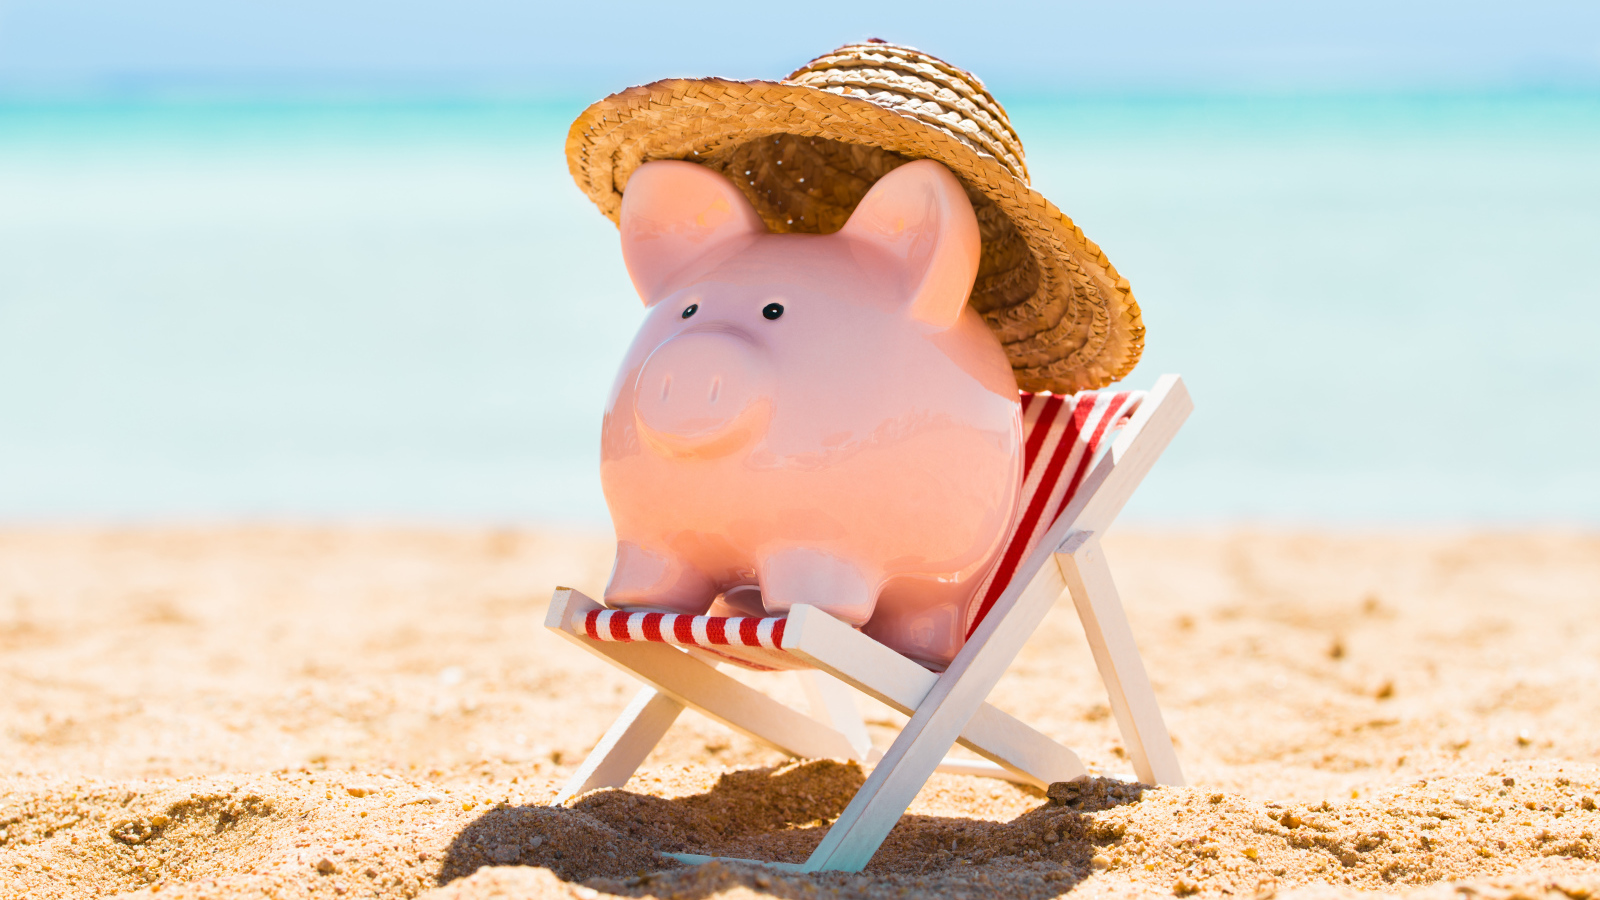 Сувенир свинка в шляпе лежит в игрушечном кресле на пляже